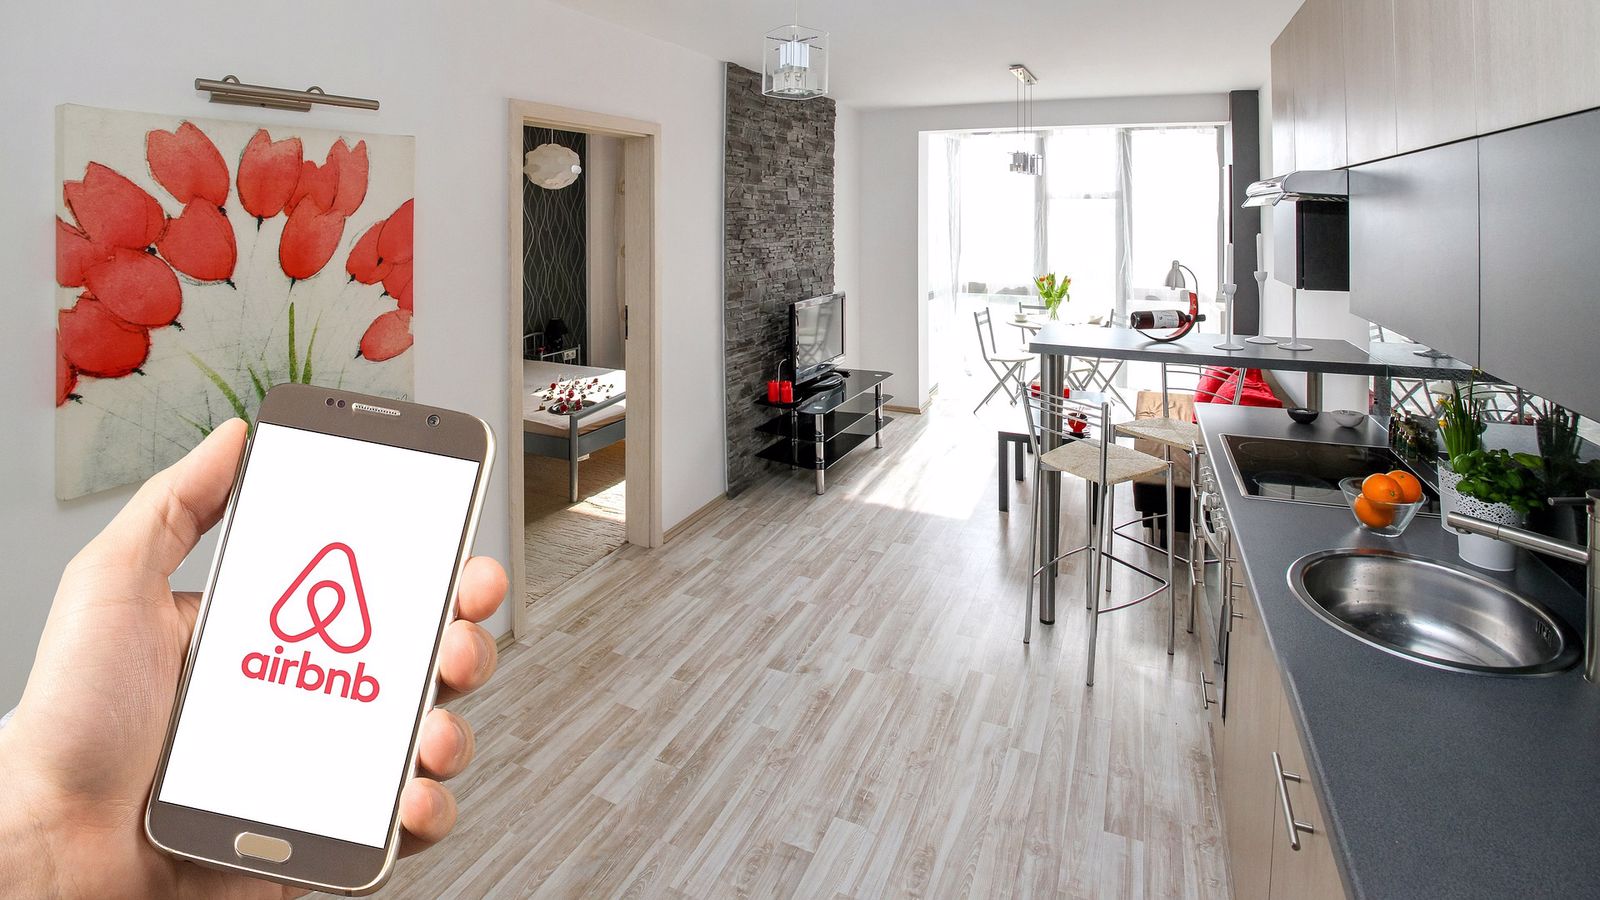 airbnb depremzedeler icin ucretsiz gecici barinma imkani sunuyor 1